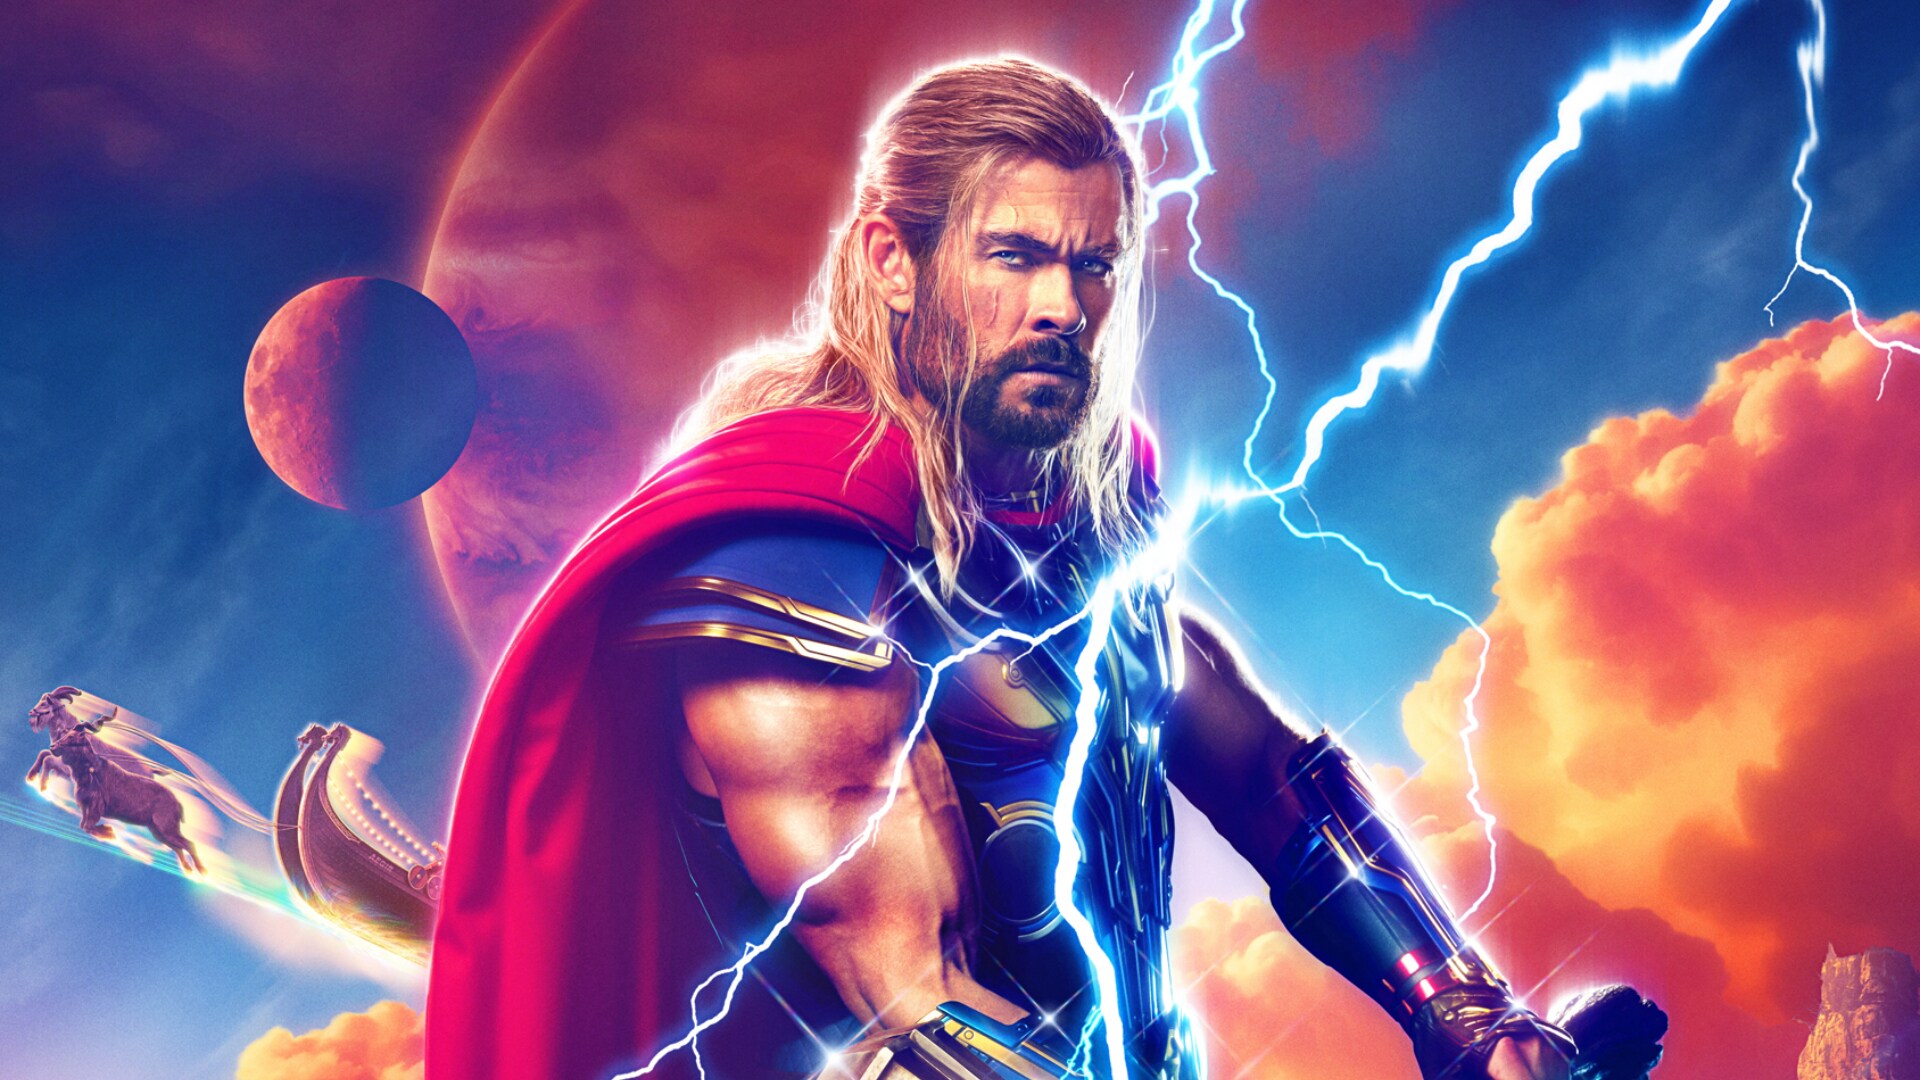 Filmagens de Thor: Love and Thunder devem começar em janeiro de